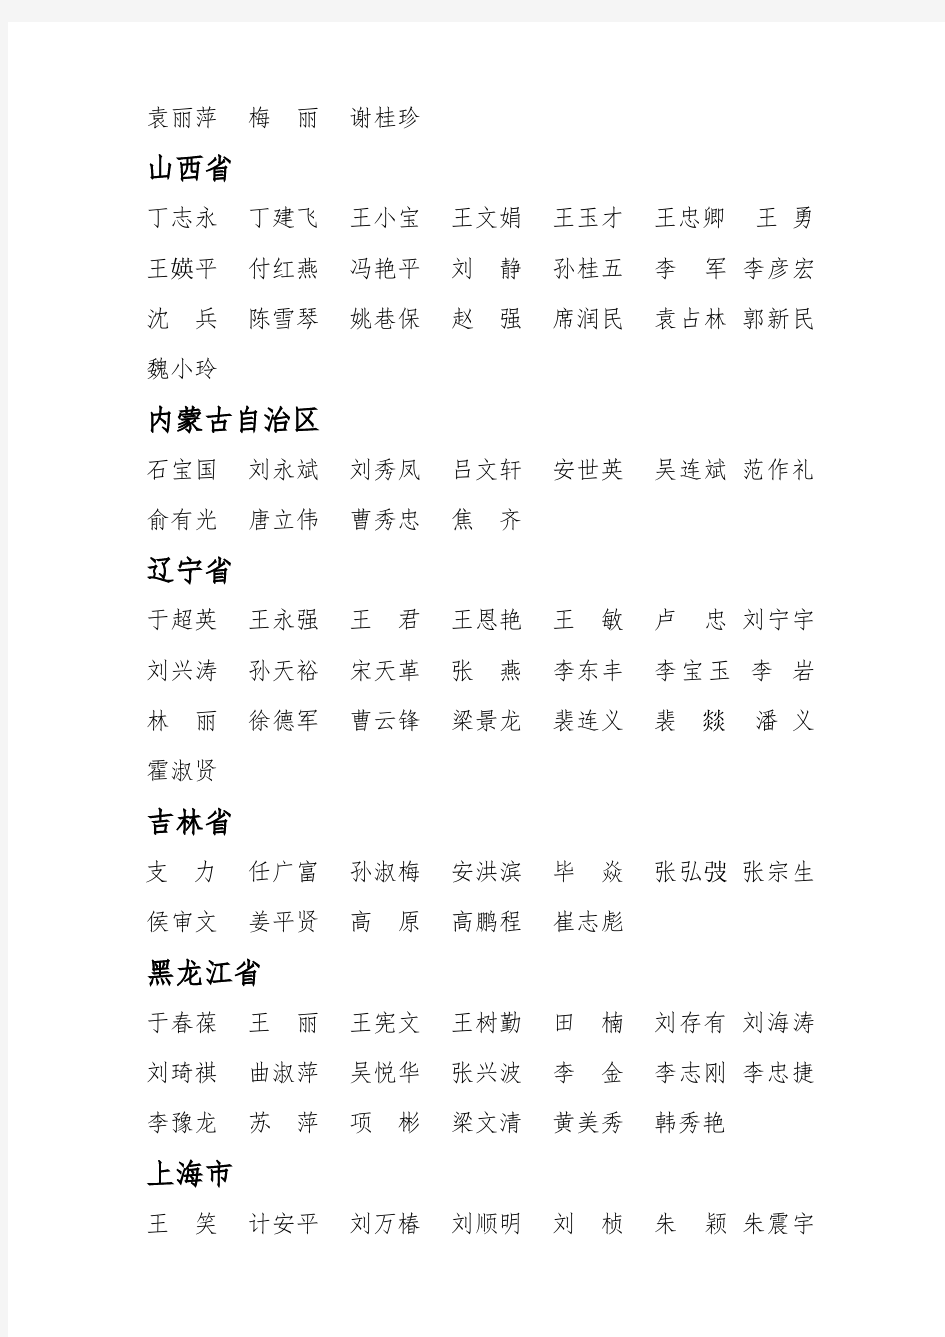 中国注册会计师协会第二批 资深会员(执业)名单